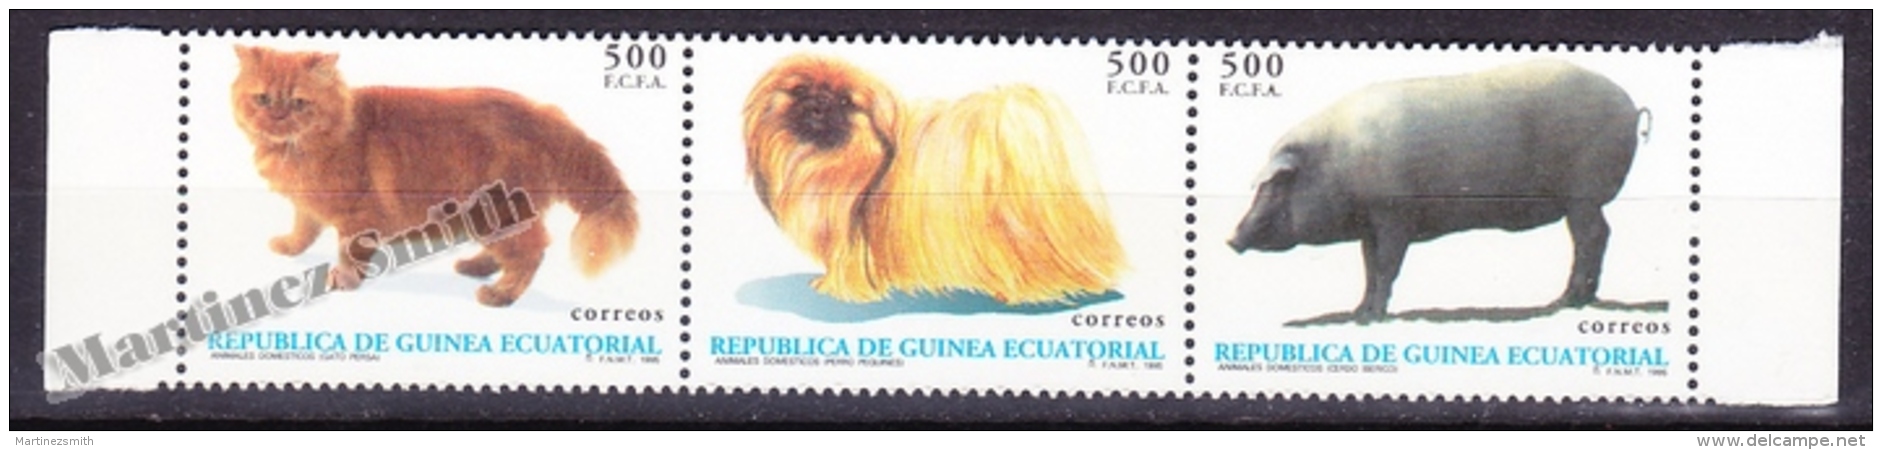 Equatorial Guinea - Guinée Équatoriale 1994 Edifil 196- 198,  Domestic Animals- MNH - Guinea Ecuatorial